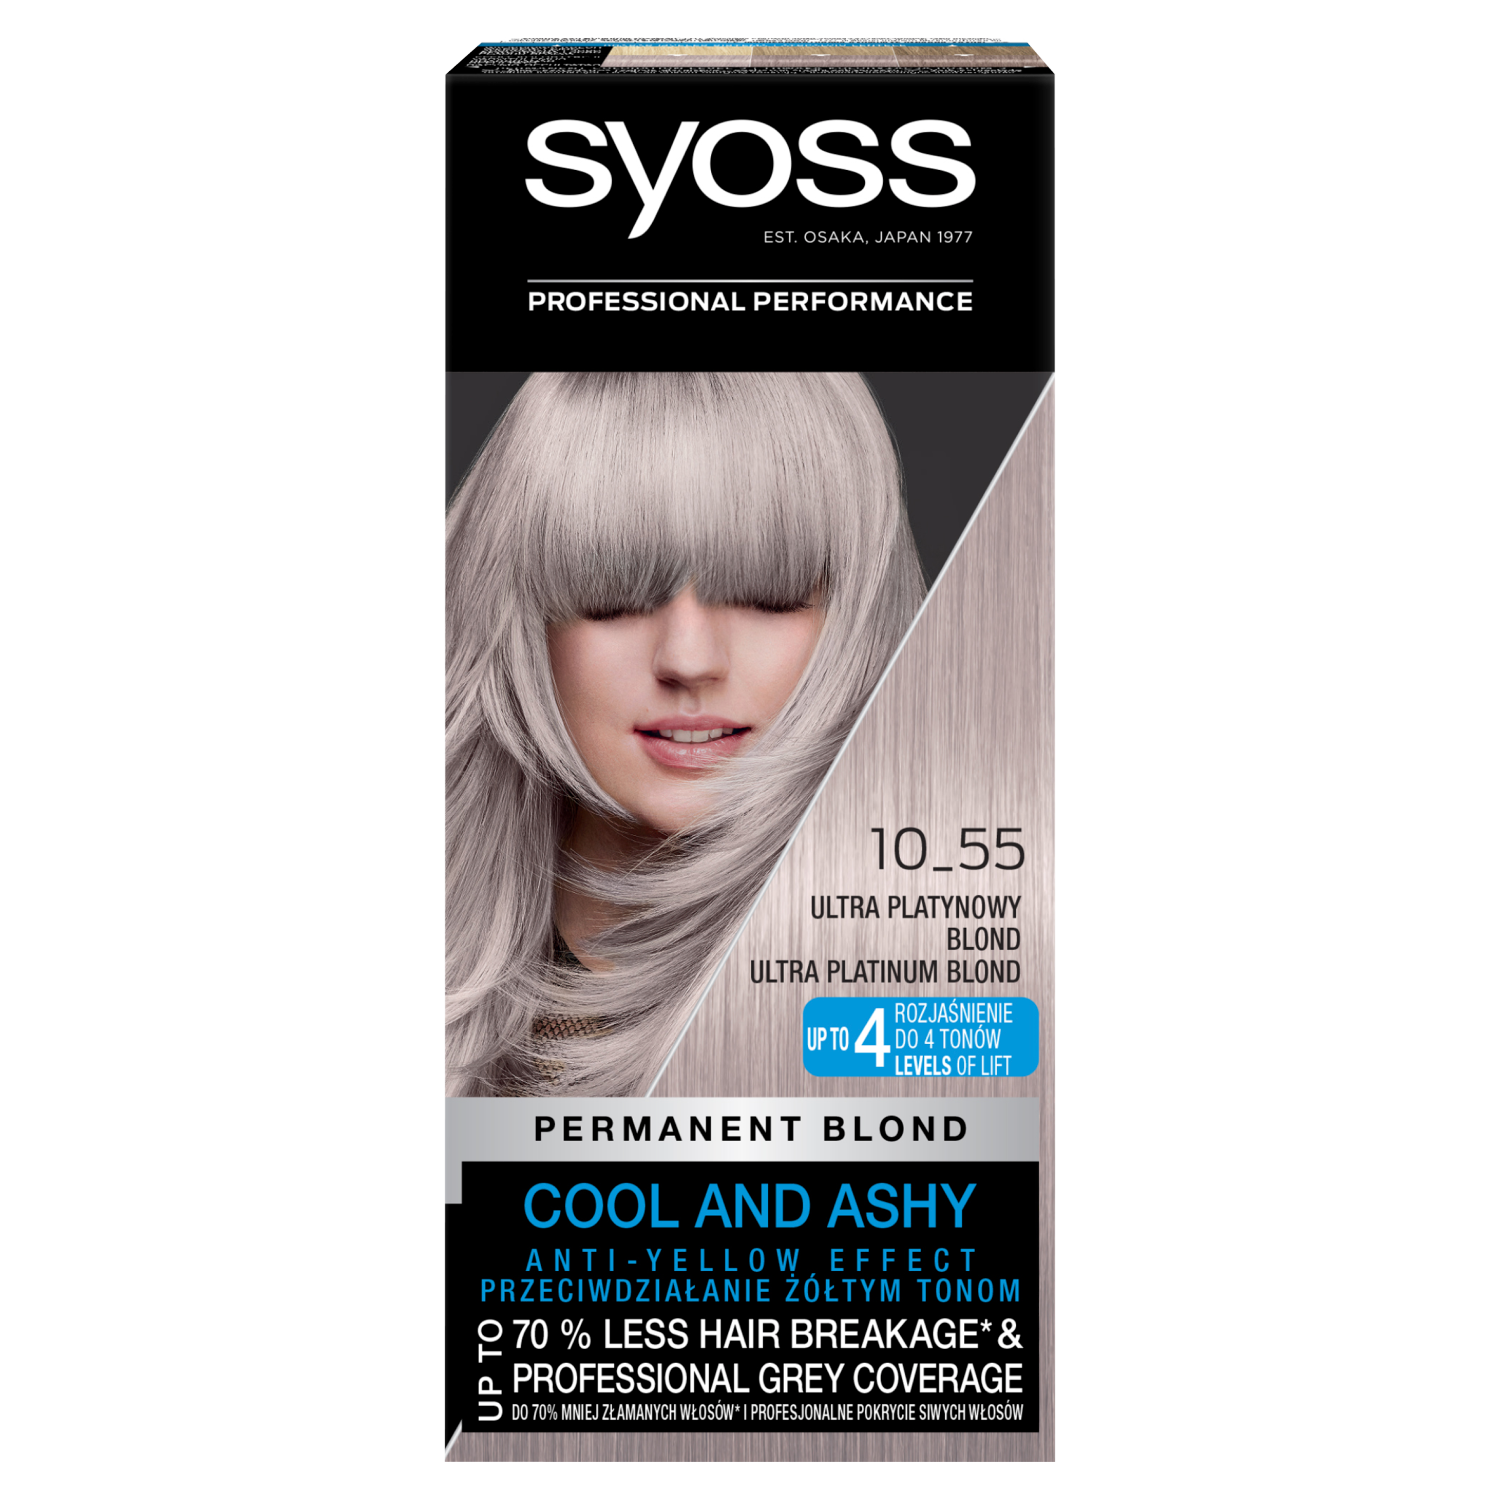 Палитра красок пепельный. Краска Syoss professional Performance платиновый. Крем-краска для волос Syoss 10-55 ультра платиновый блонд. Сьёс краска платиновый блонд. Краска сьес 10-55.